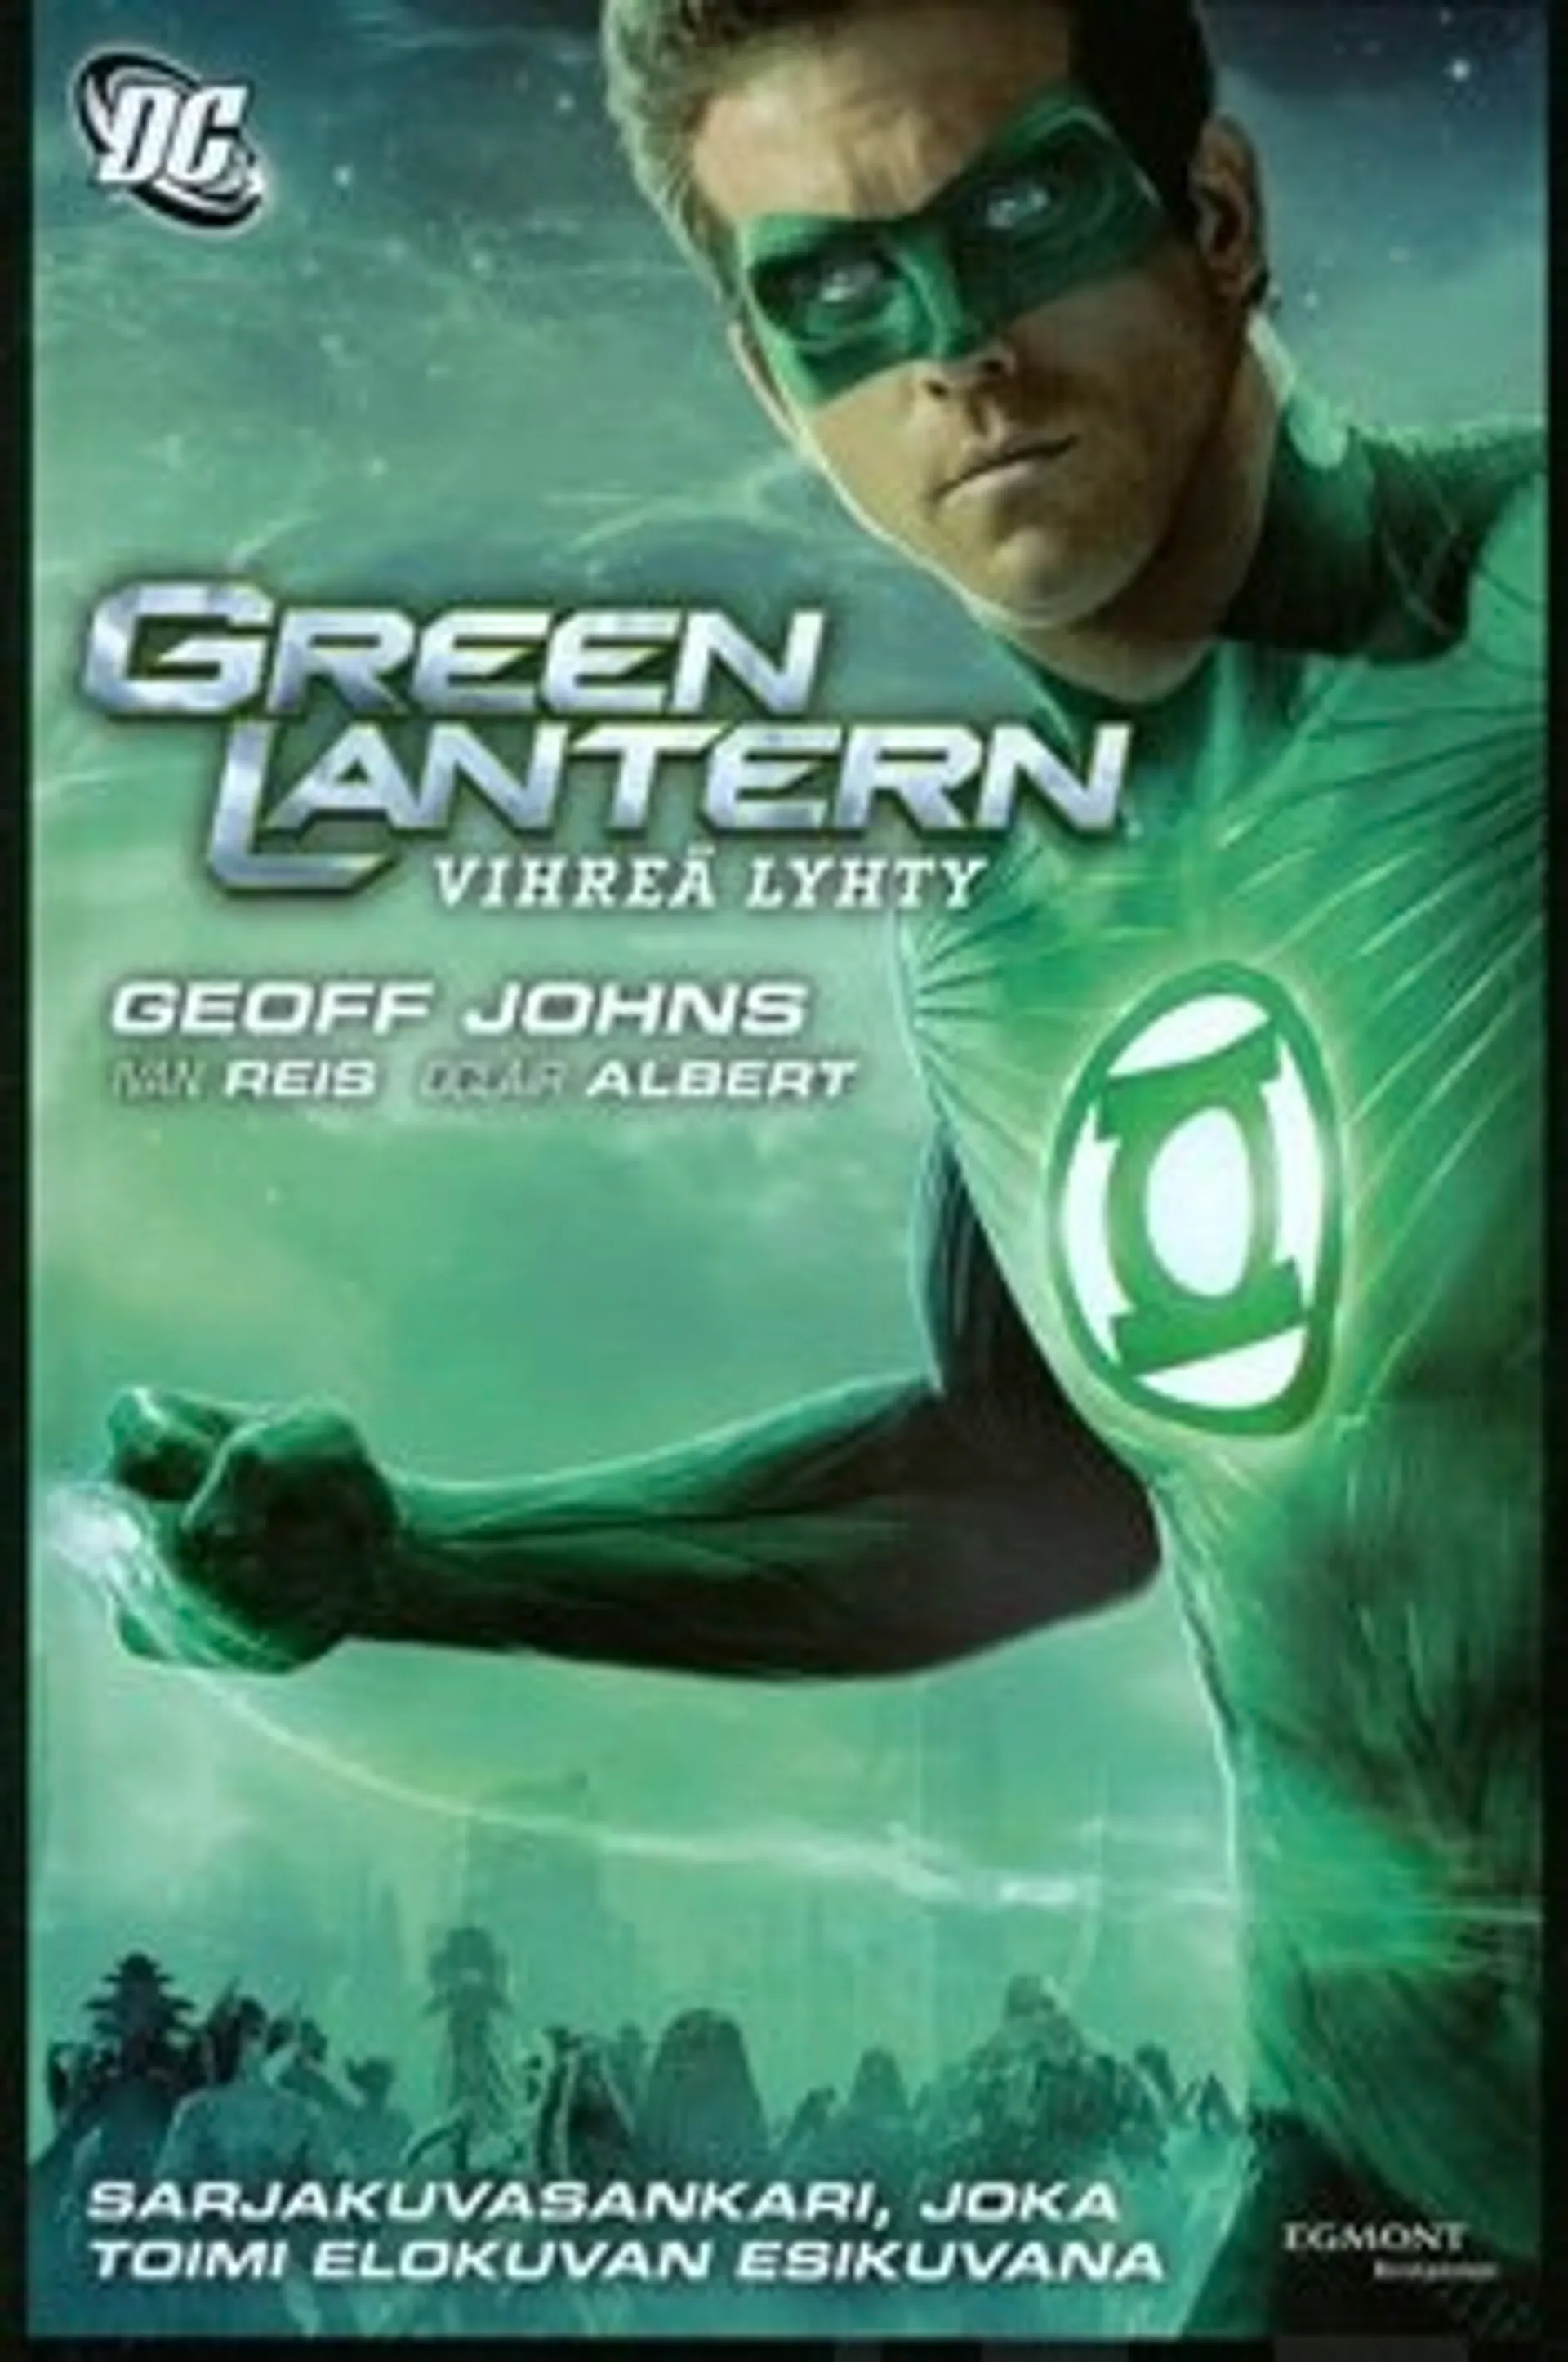 Vihreä lyhty - Green Lantern